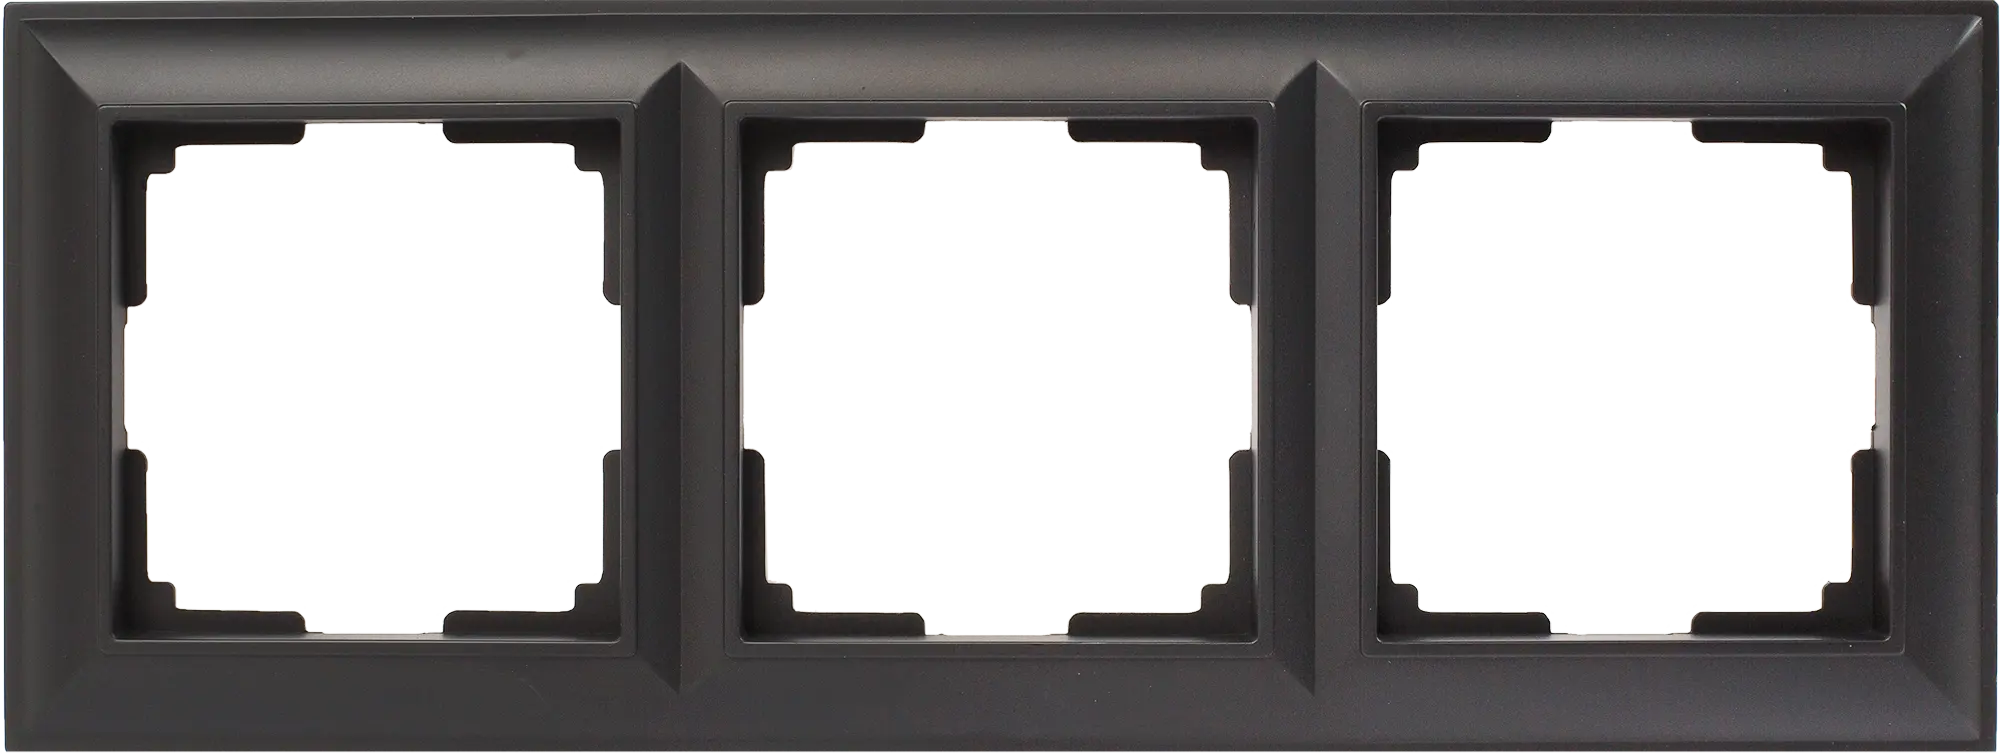 Рамка для розеток и выключателей Werkel Fiore 3 поста, цвет чёрный матовый рамка для розеток и выключателей werkel fiore 3 поста цвет чёрный матовый